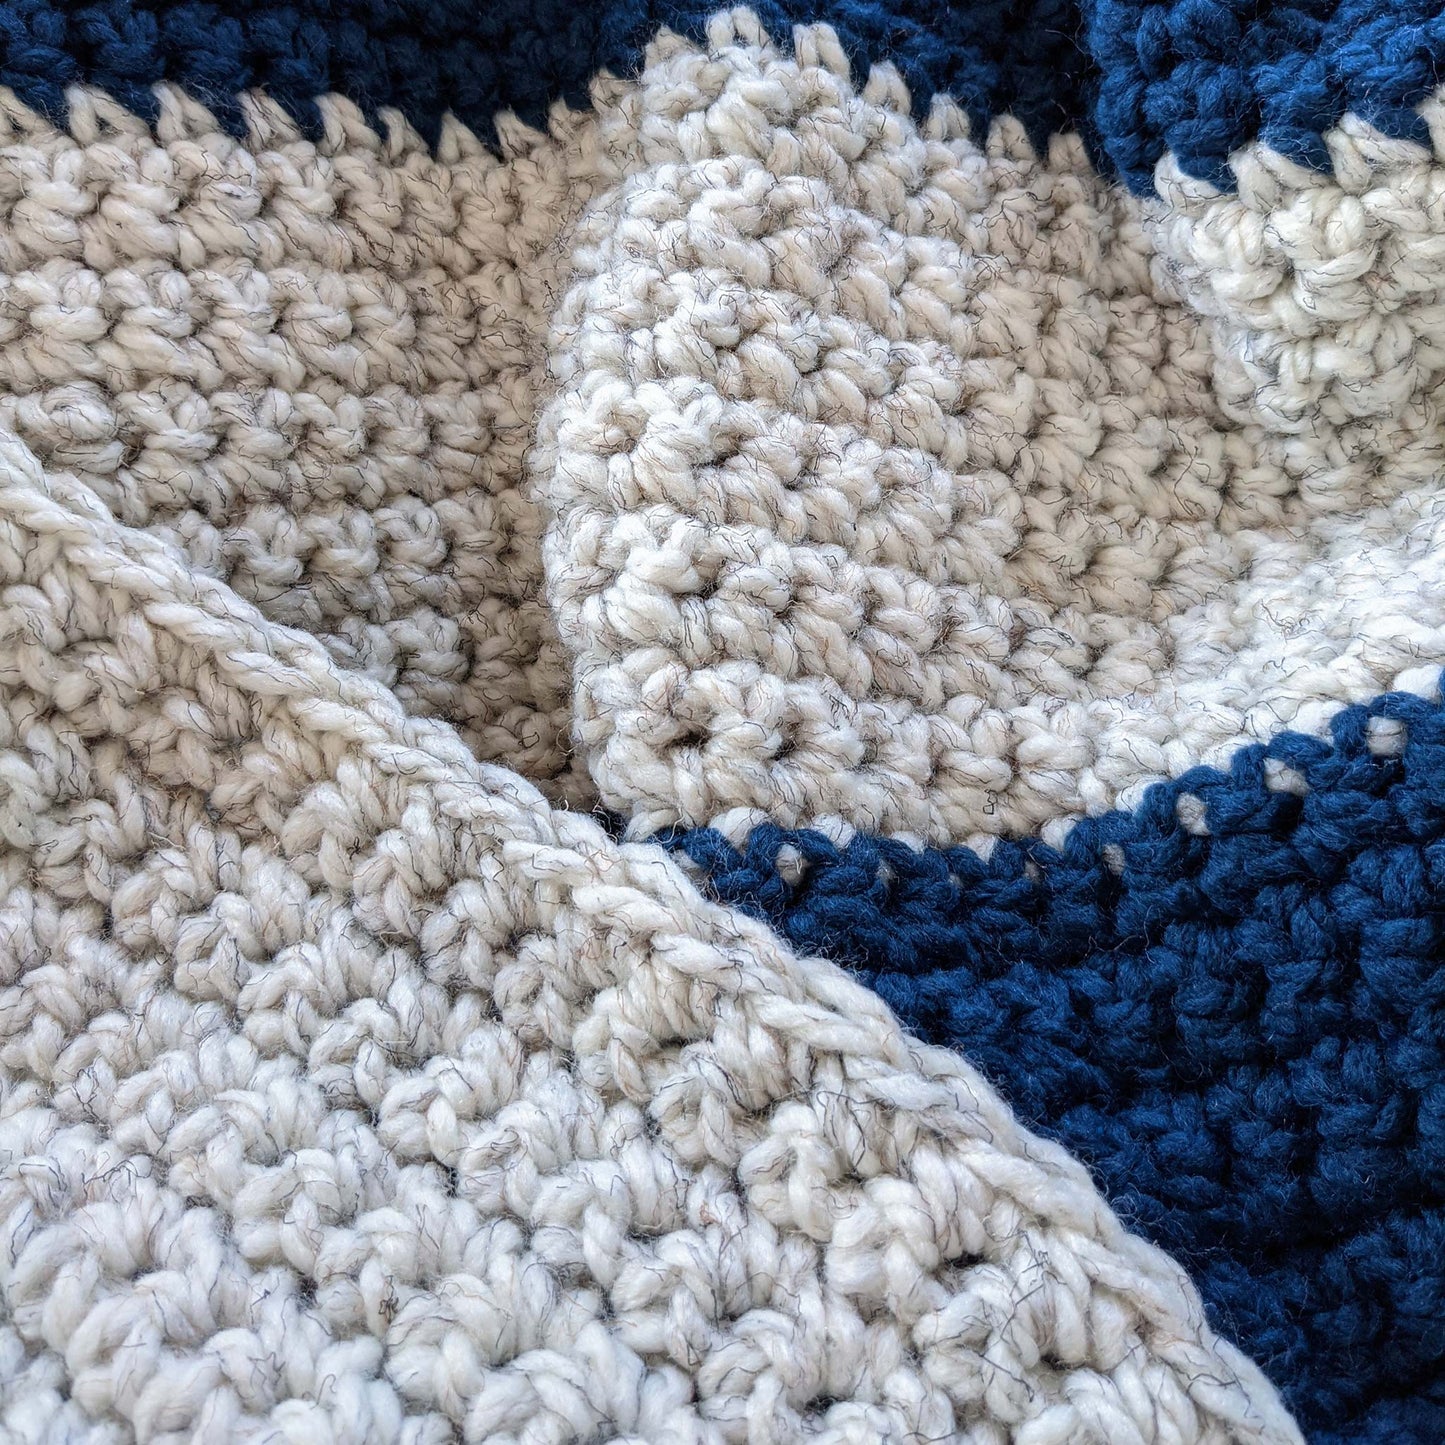 Beginner Crochet Blanket PDF